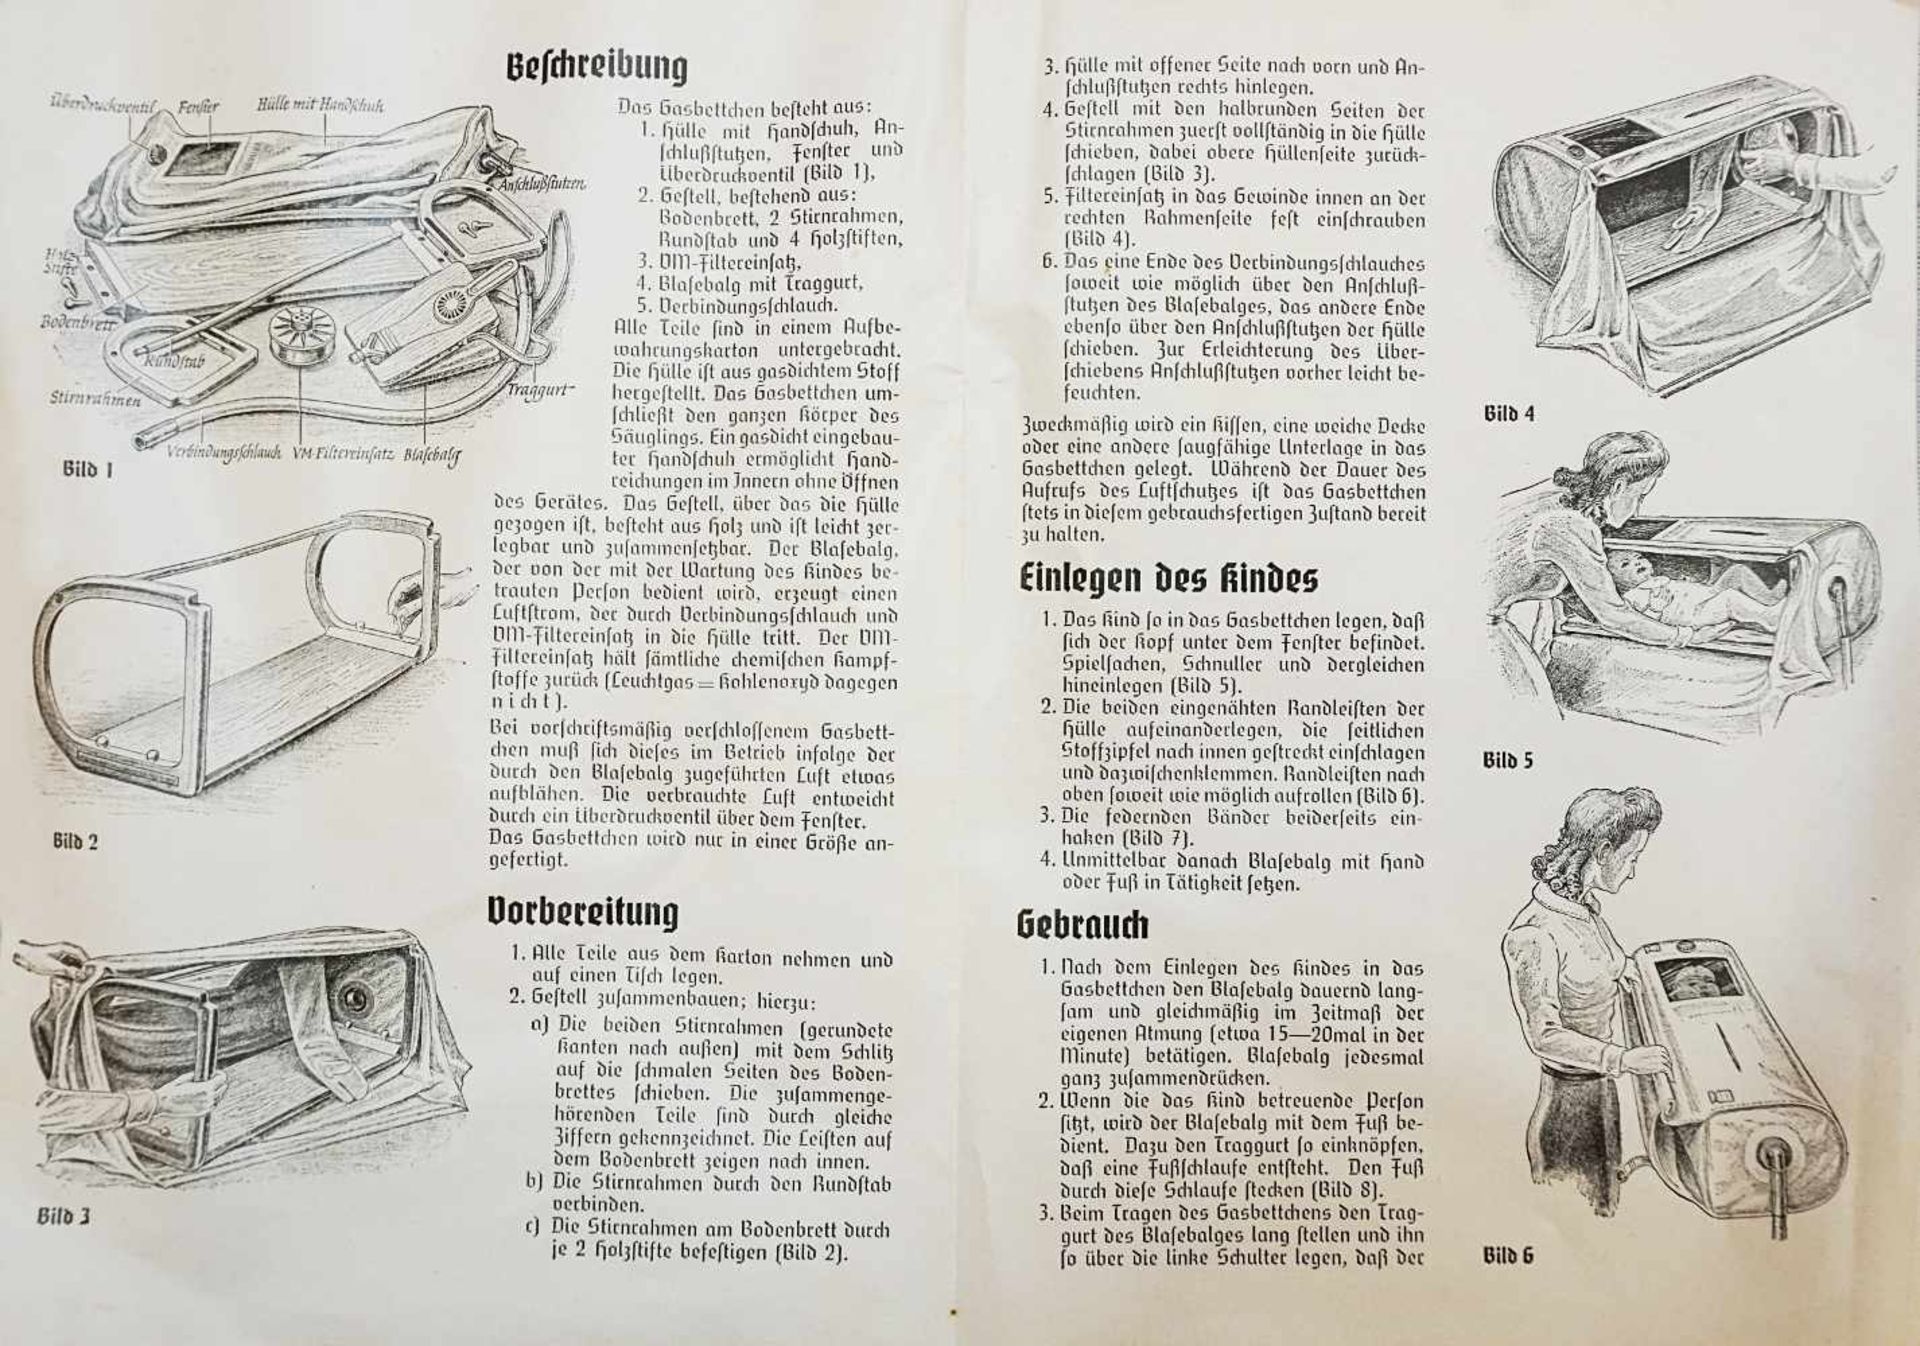 2 Objekte zum Kindergasschutz gegen sämtliche chemische Kampfstoffe 3. Reich:Gasbettchen für - Image 4 of 6